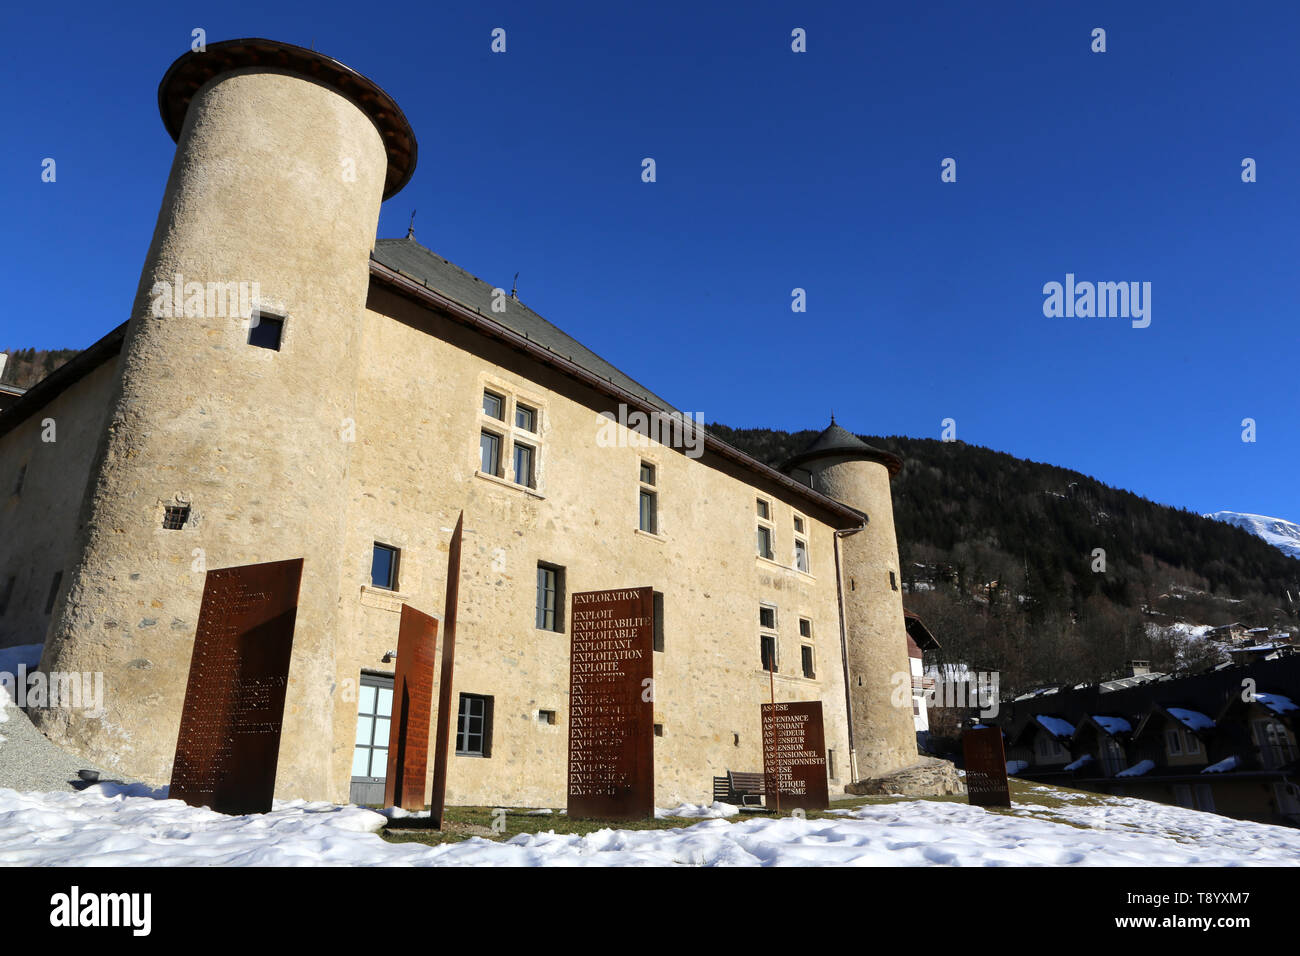 Maison forte Haute-Tour. Saint-Gervais-les-Bains. Haute-Savoie. France. Stock Photo